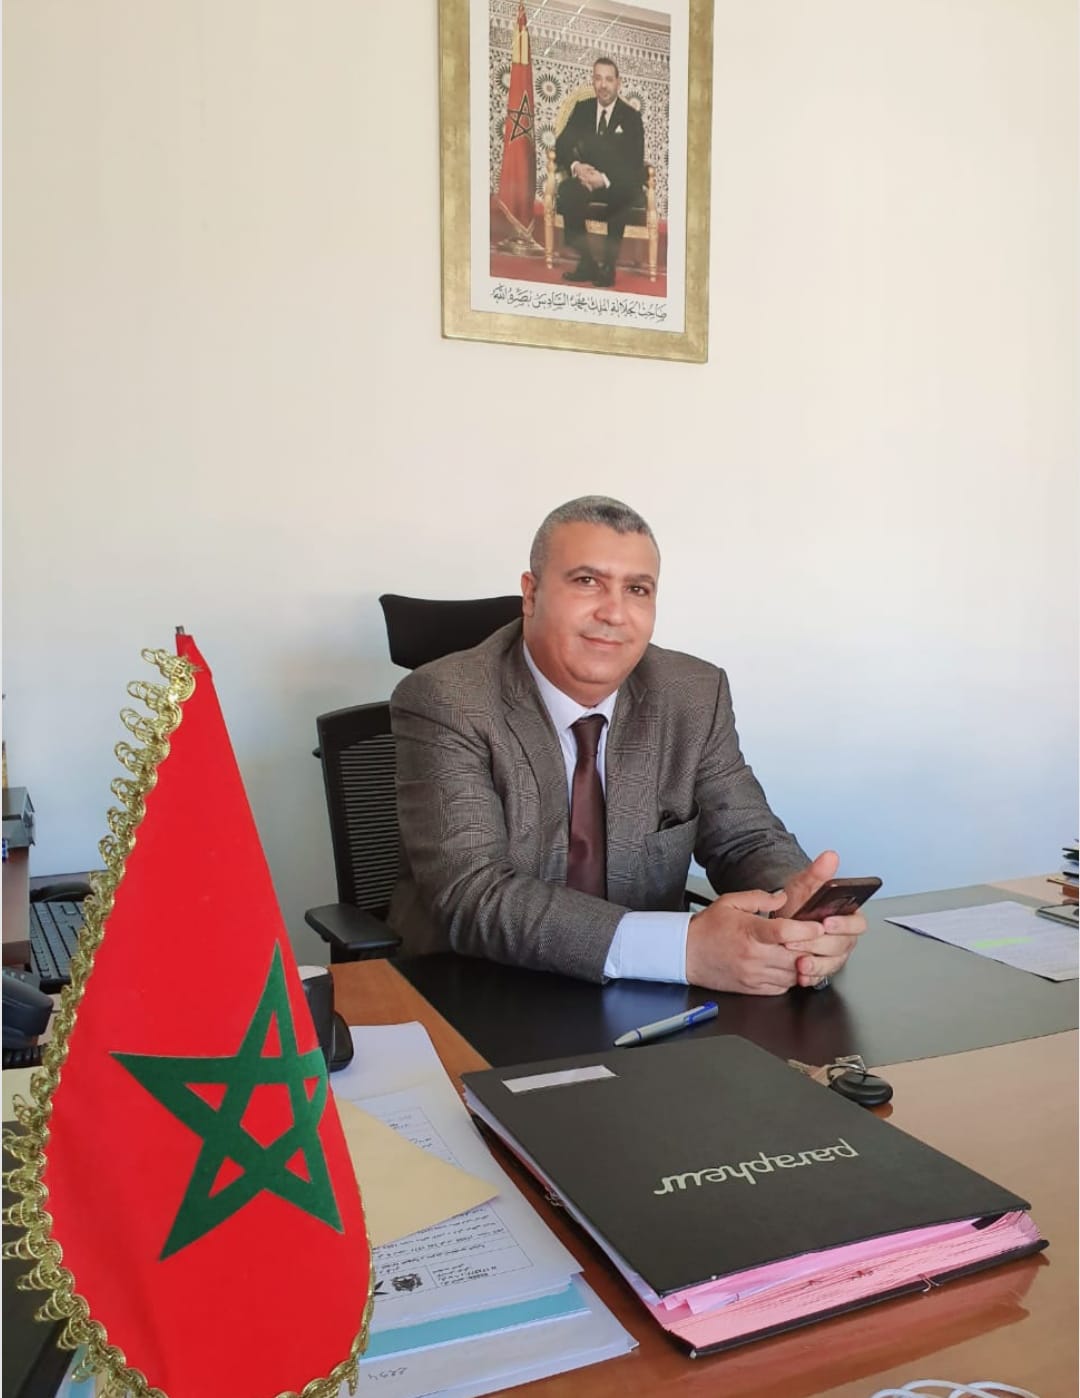 بلاغ للمركز المغربي للدراسات والابحاث الإستراتيجية: المملكة المغربية أشرف من النكرات والبيادق الخائنين لأصولهم ووطنهم